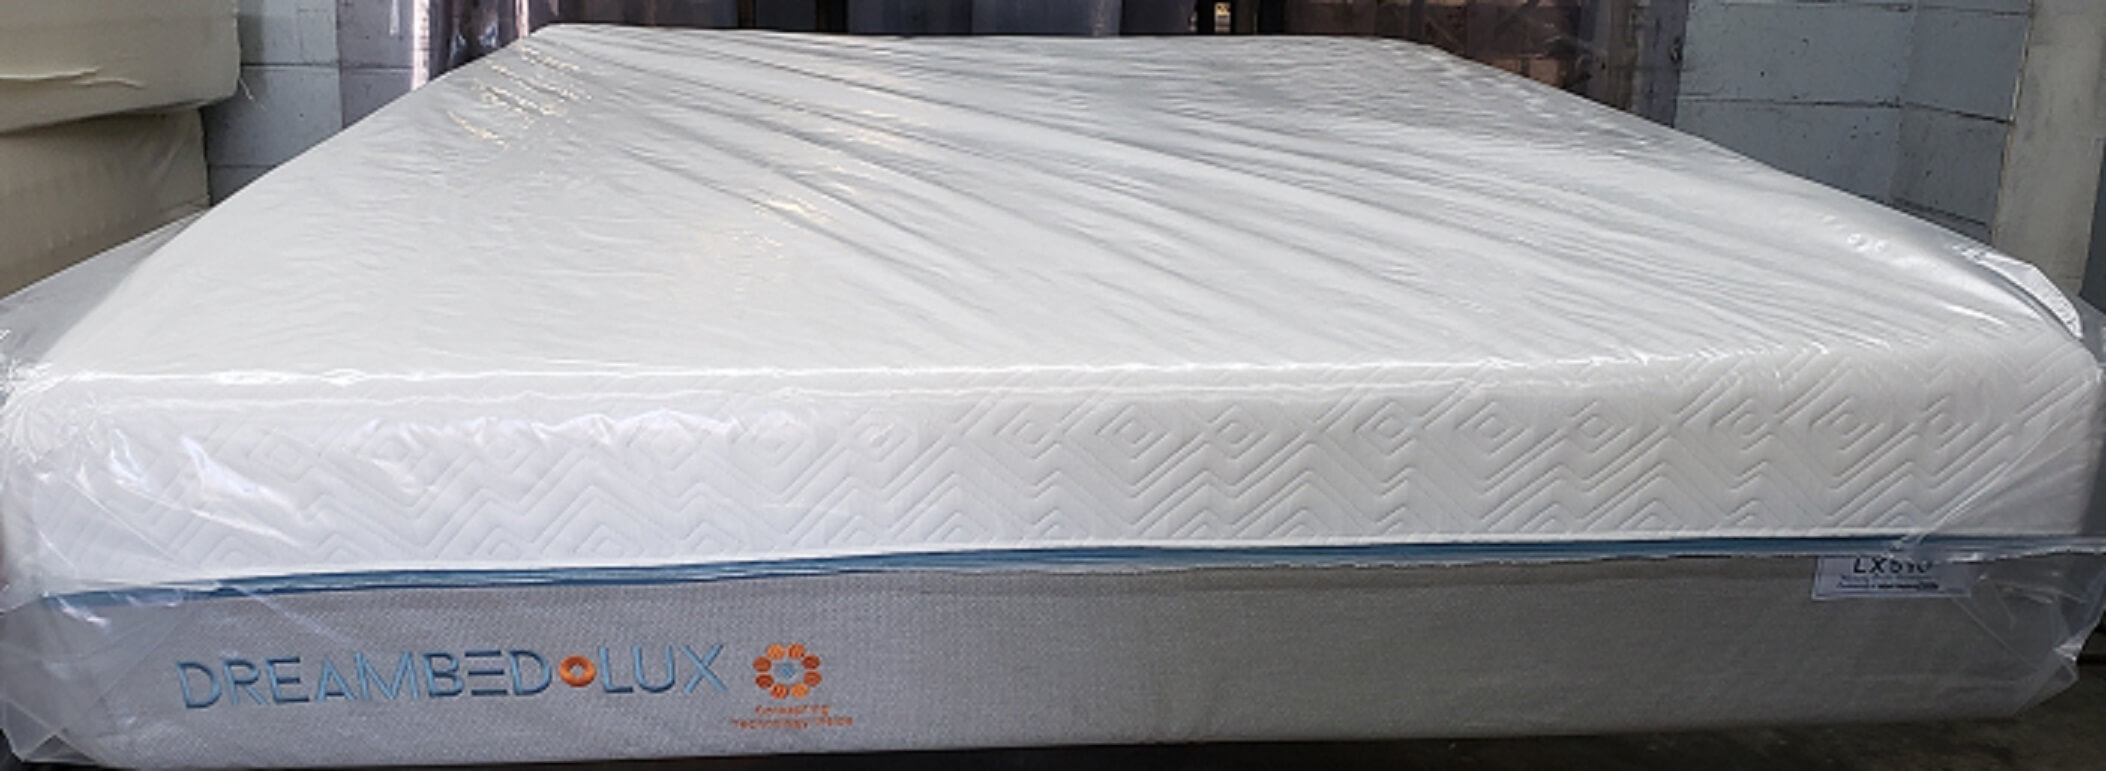 dreambed lux 12 inch memory foam mattress